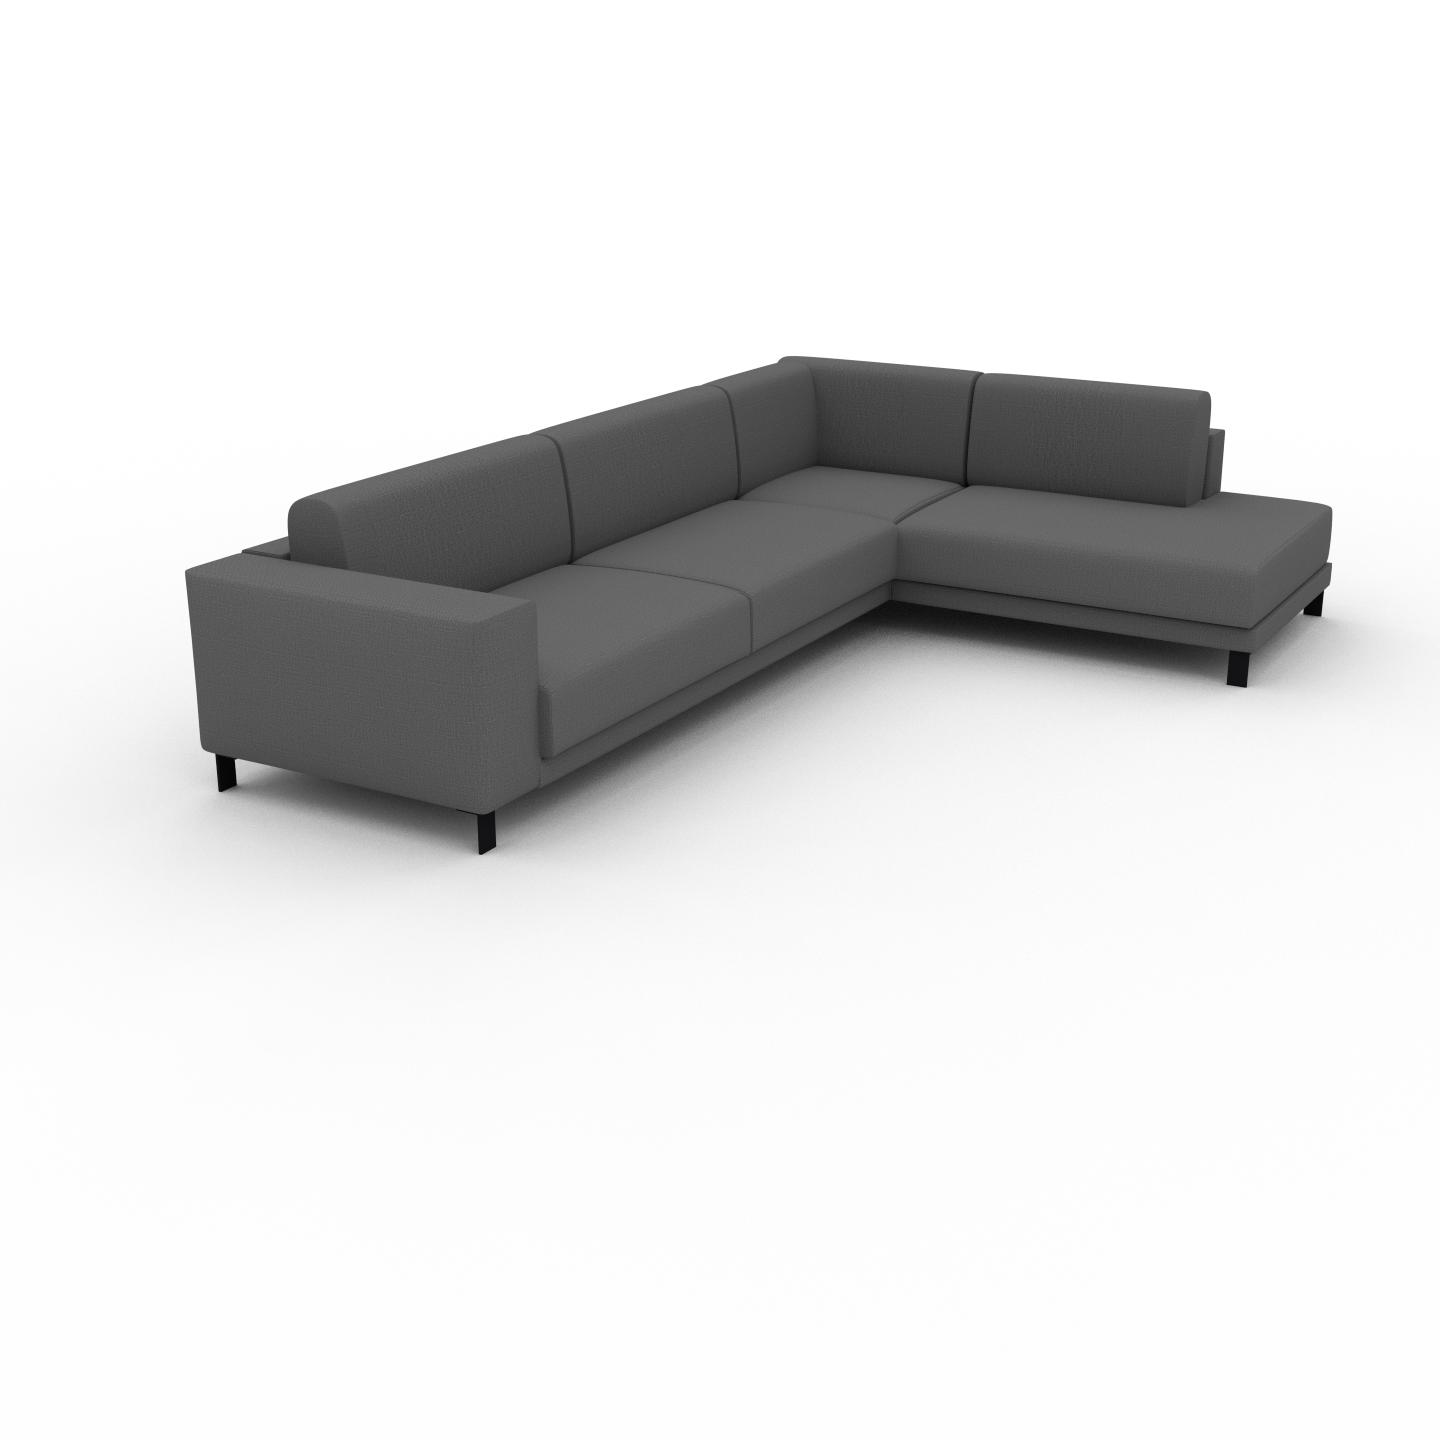 MYCS Sofa Steingrau - Moderne Designer-Couch: Hochwertige Qualität, einzigartiges Design - 214 x 75 x 318 cm, Komplett anpassbar